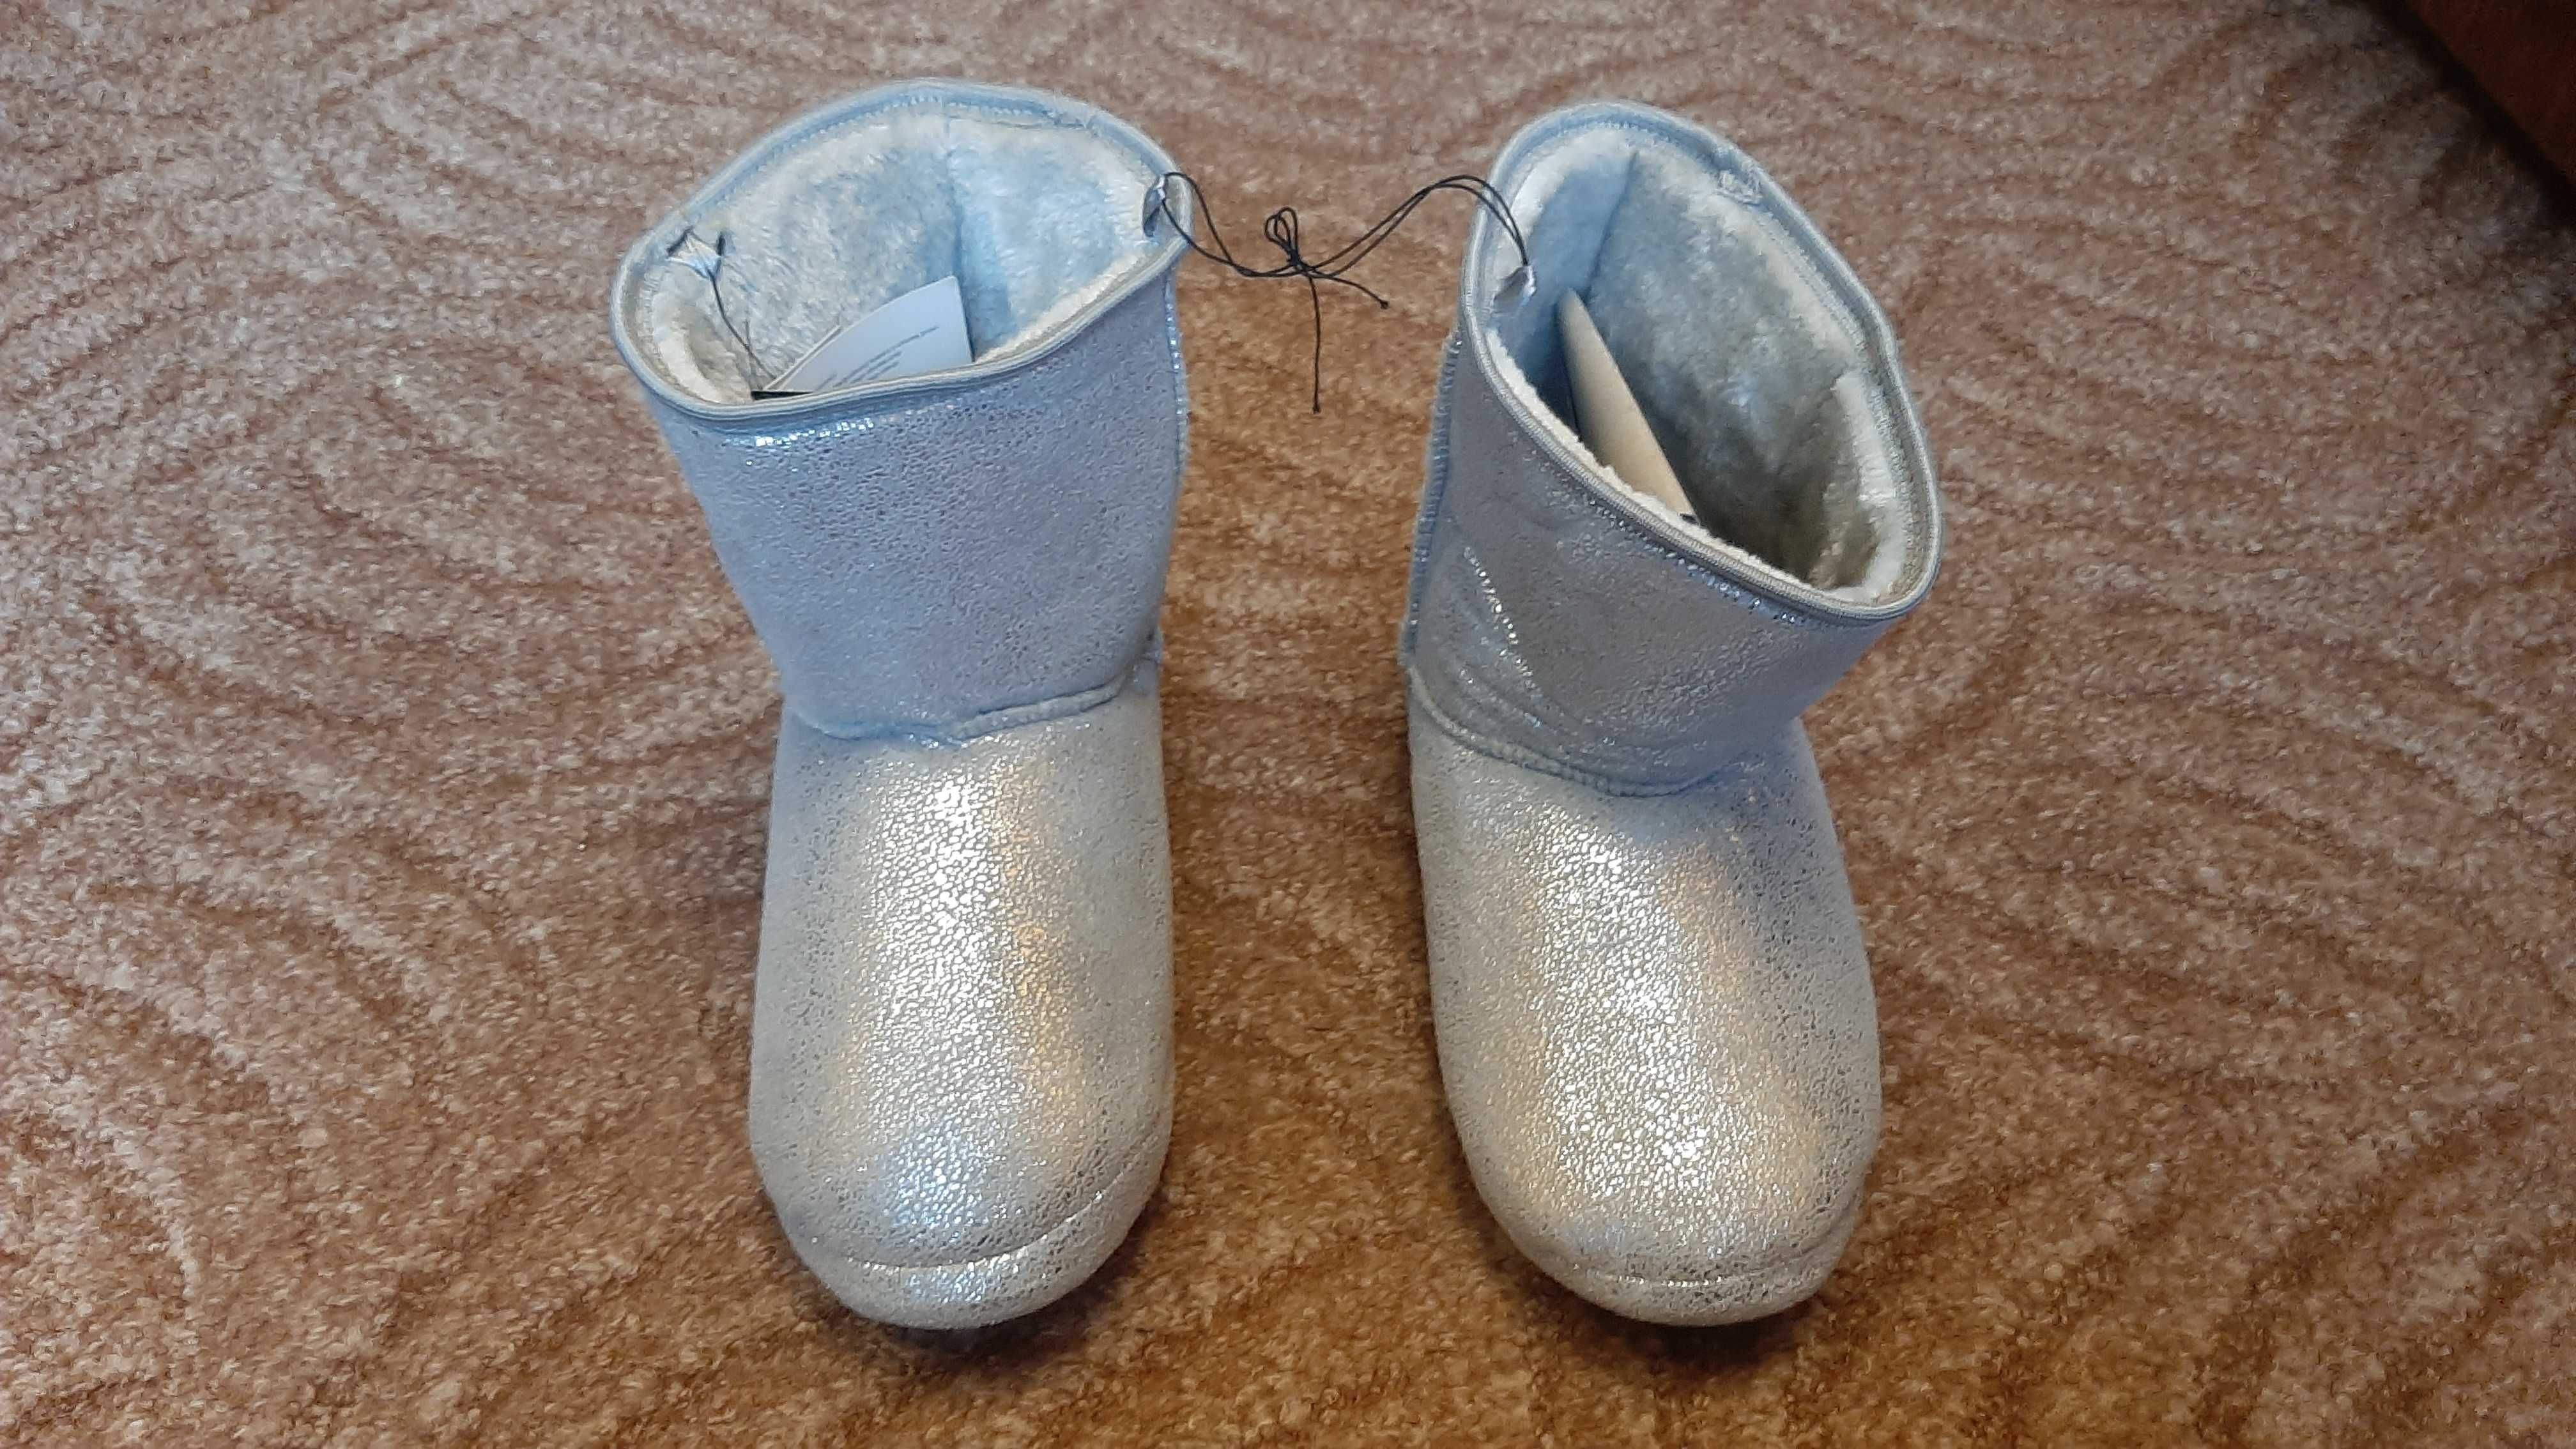 Nowe kapcie buty damskie dziewczęce zimowe ocieplane  rozmiar40/41